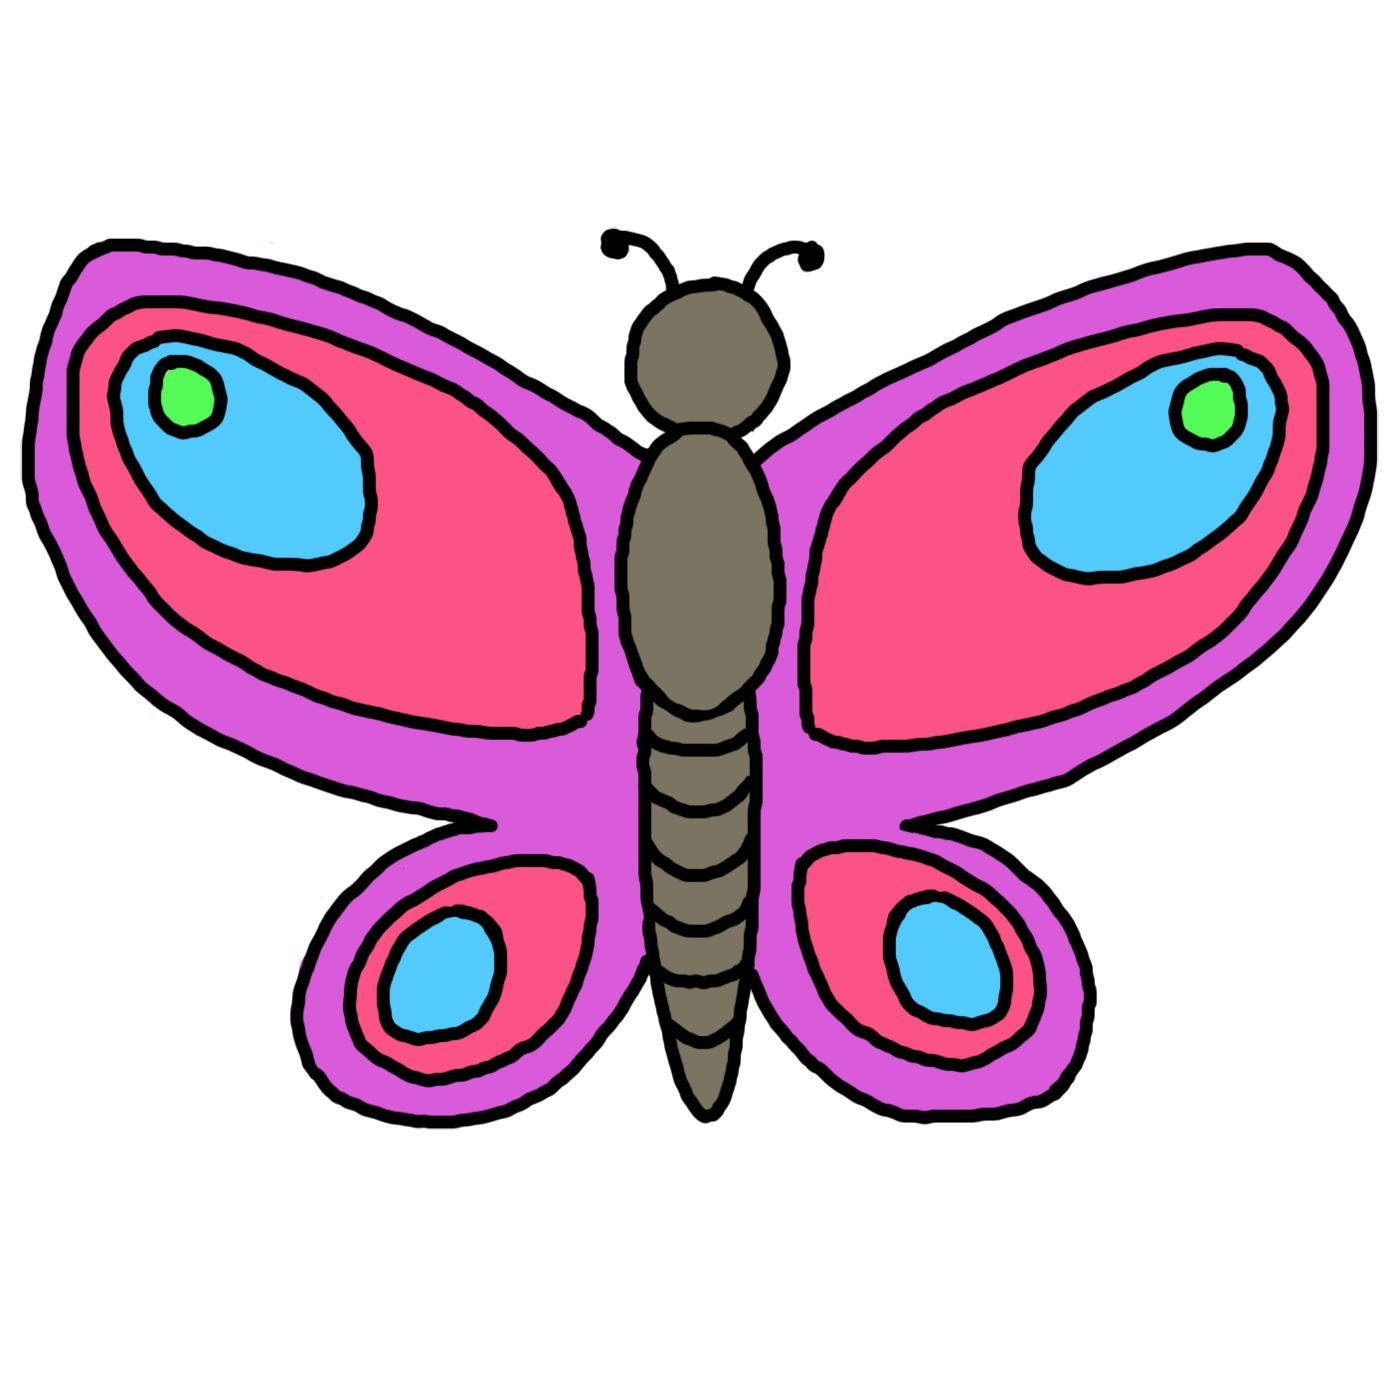 Clipart of butterflies illust